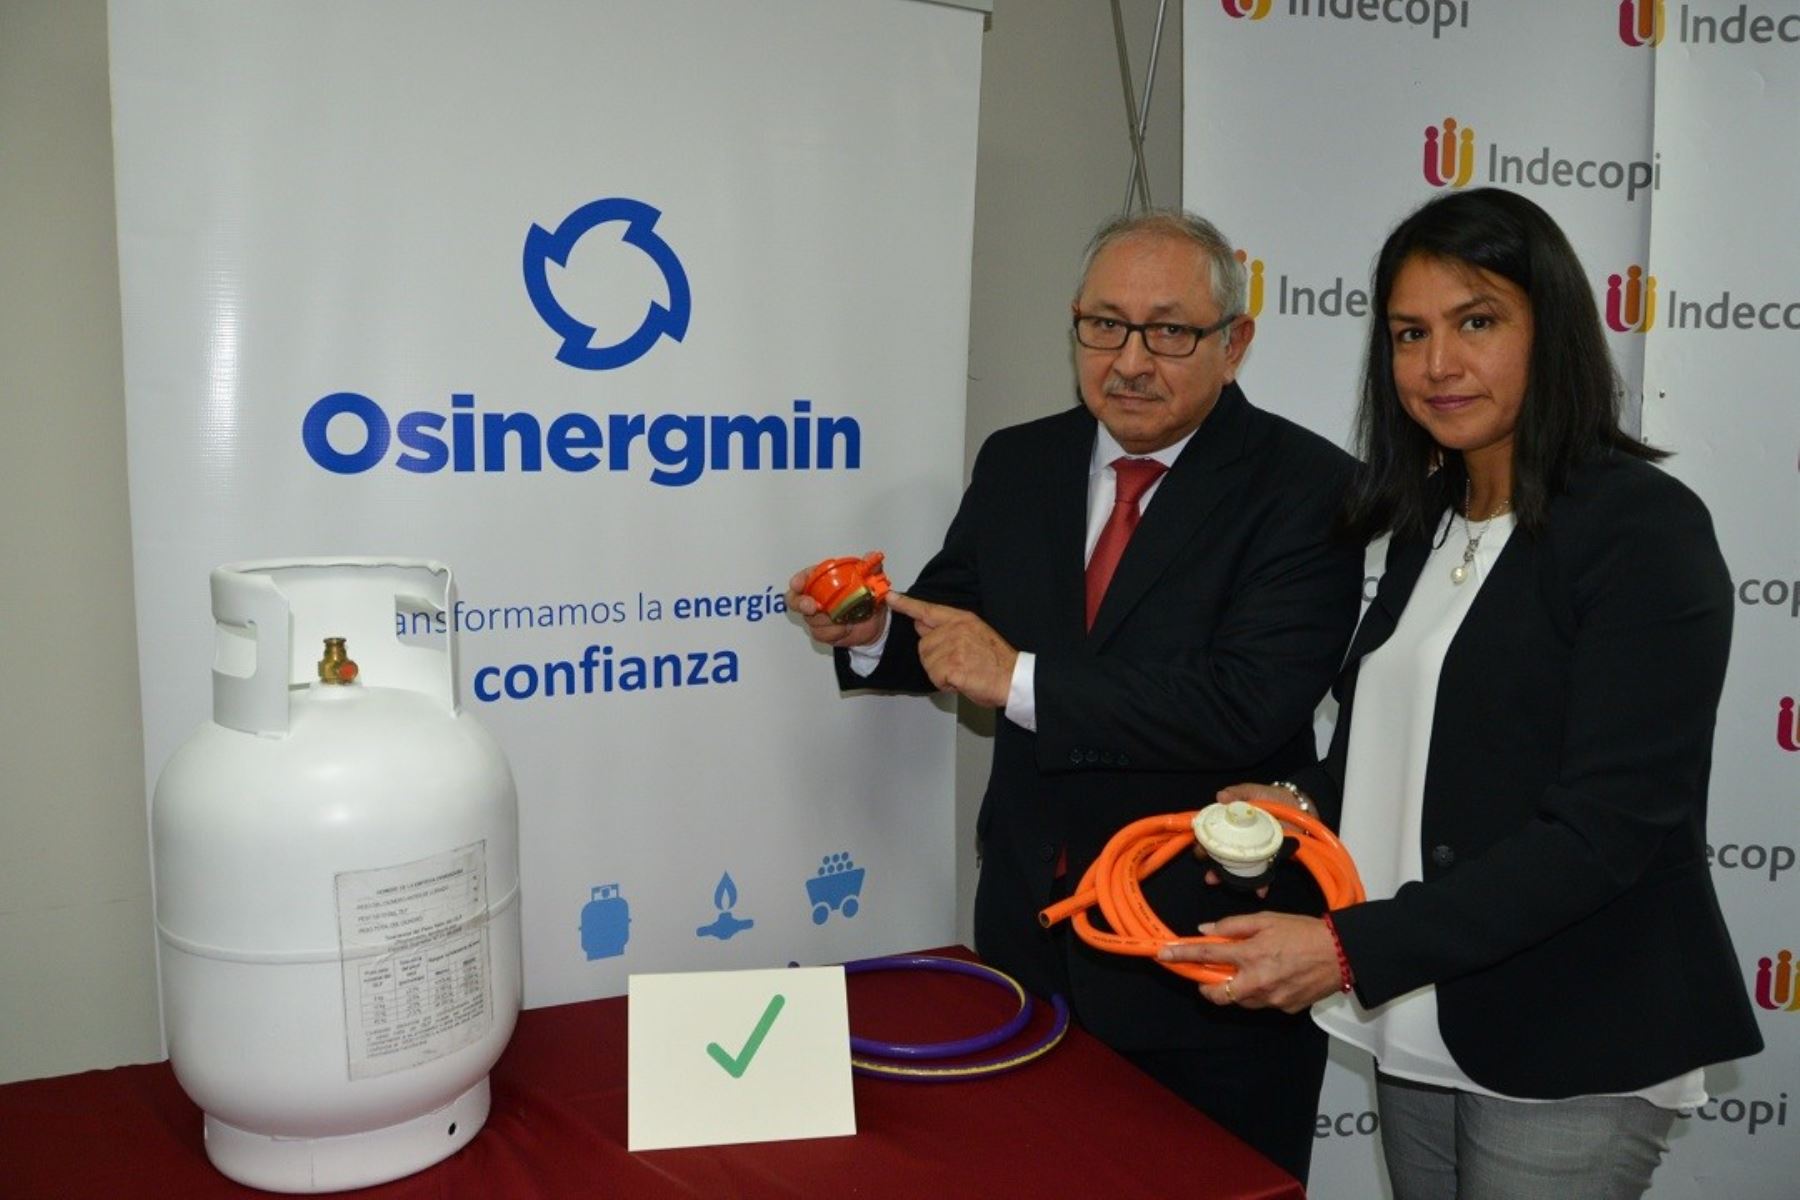 Indecopi y Osinergmin acaban de lanzar una campaña nacional para que consumidores sepan cómo reconocer un balón doméstico de gas seguro.